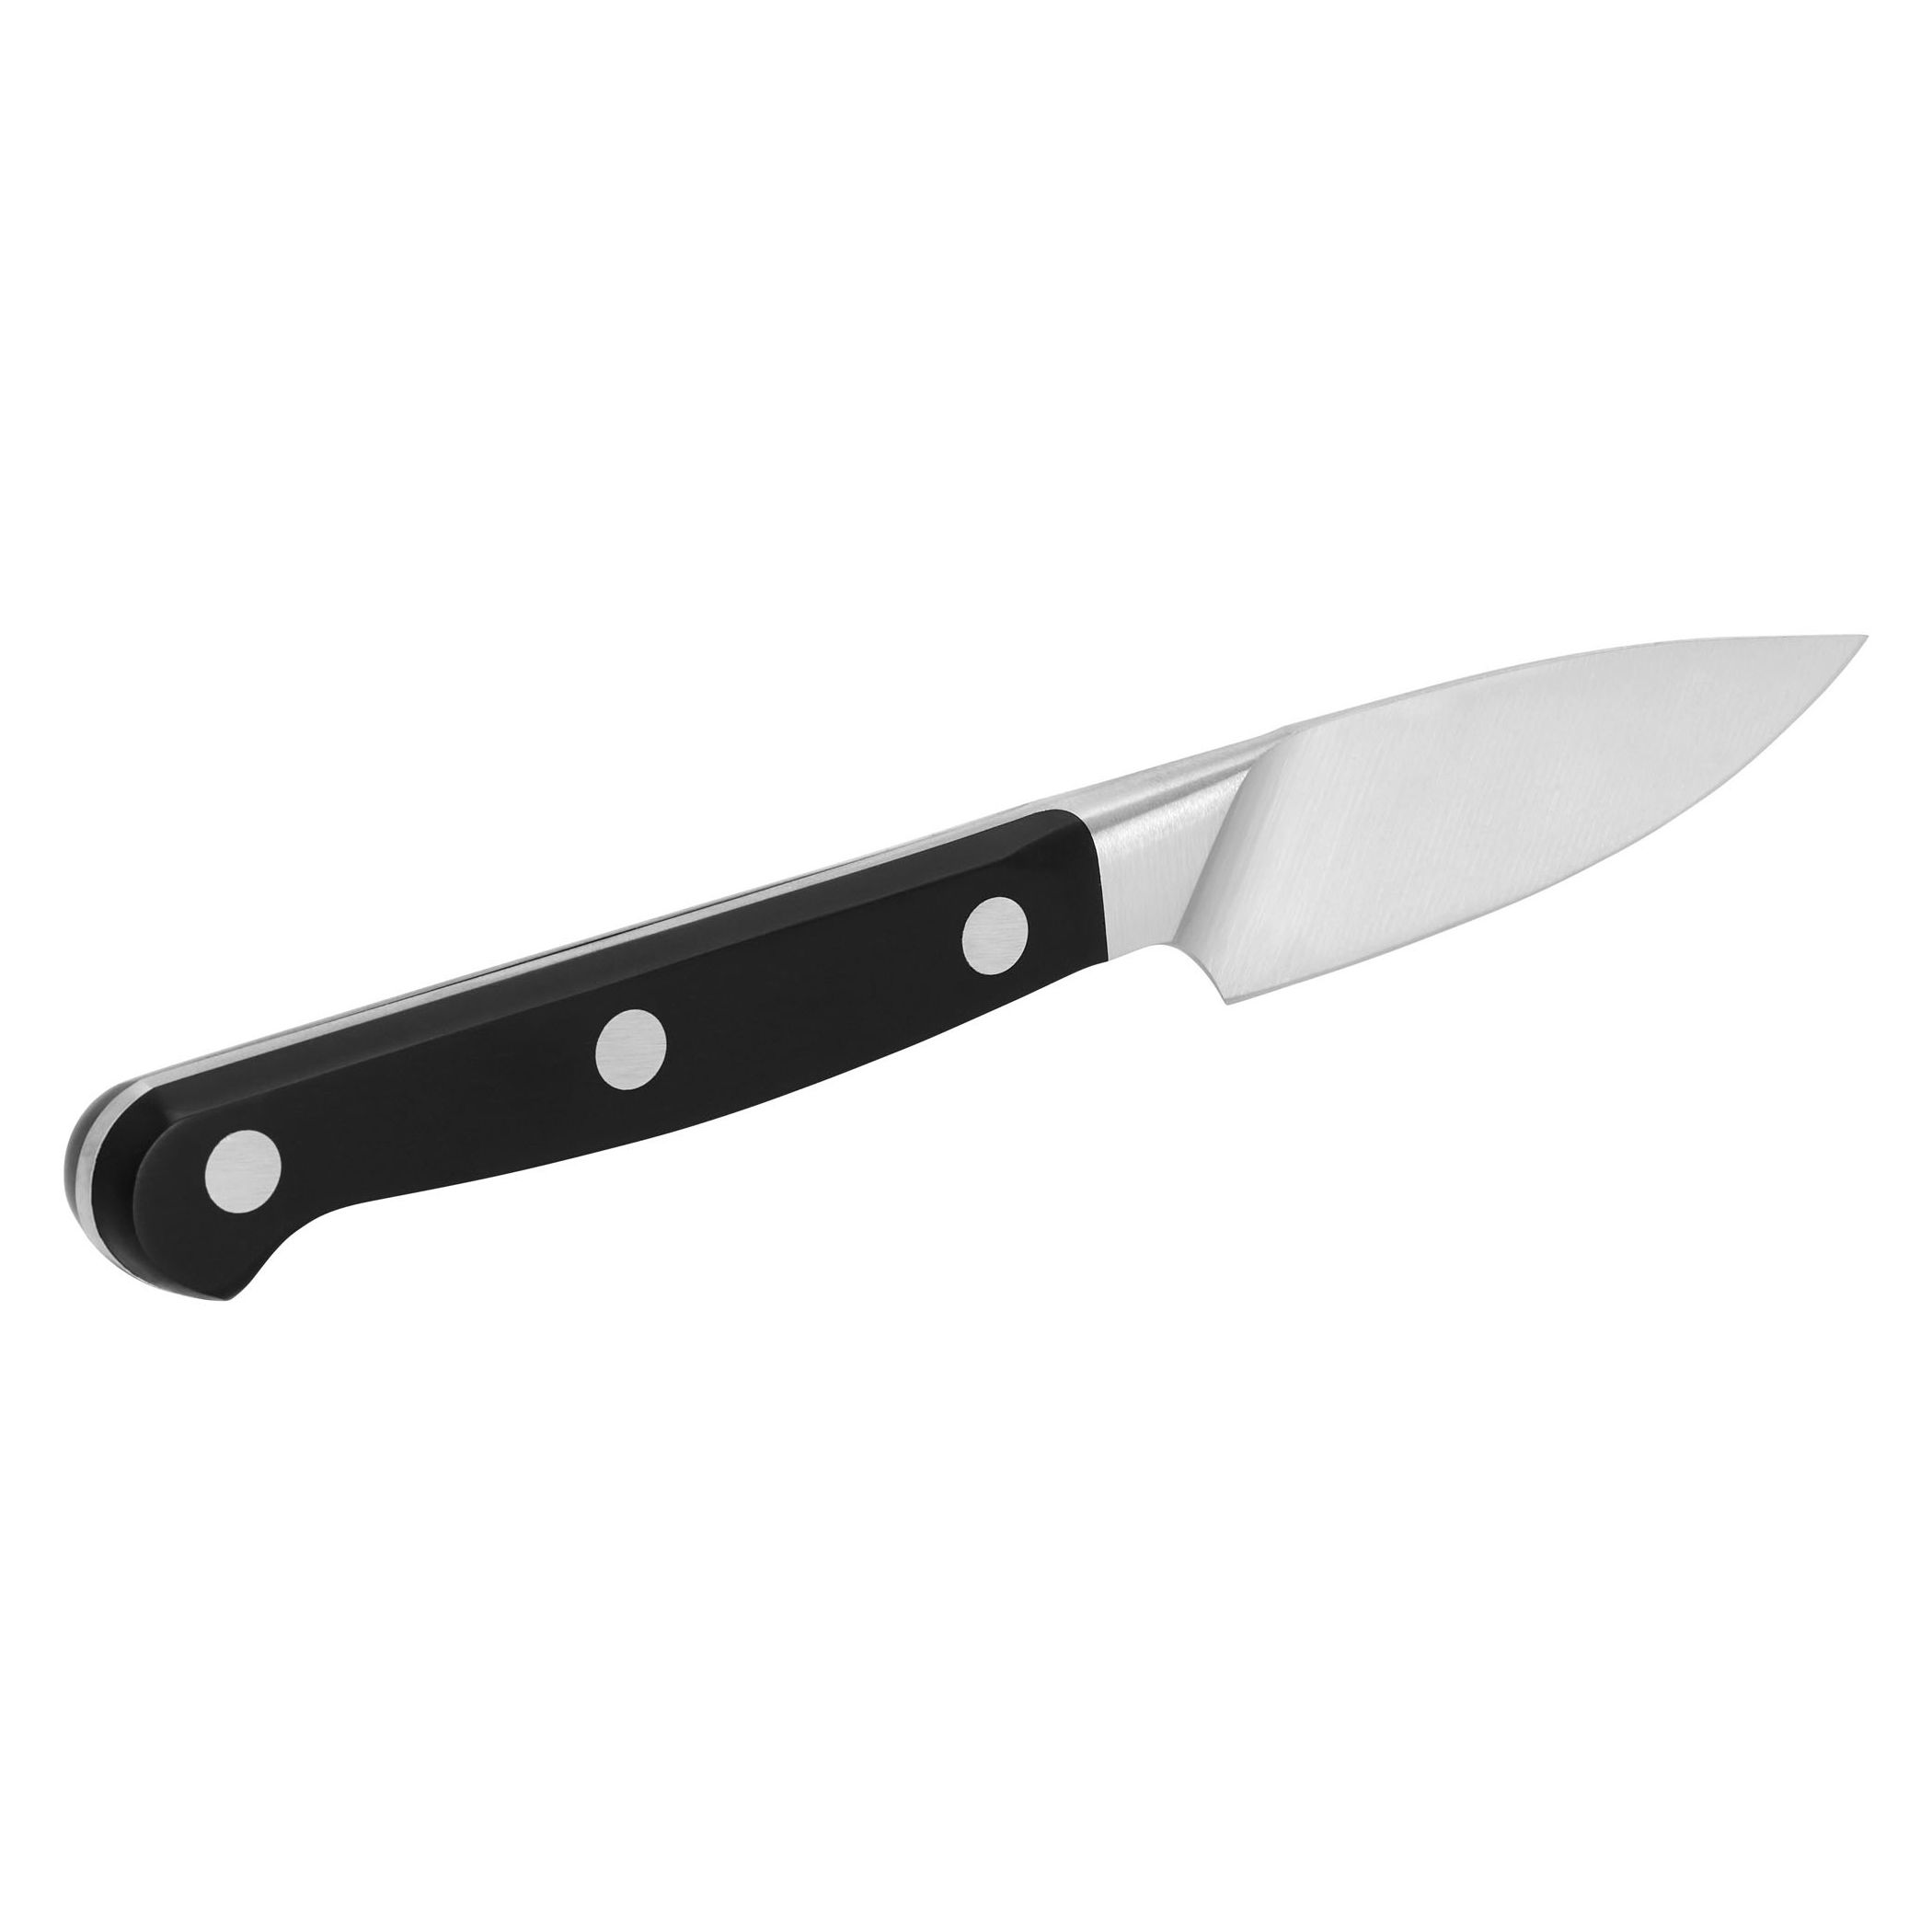 RAZOR SHARP J.A Henckels Int. Fine Edge Pro 3 Paring Knife (31460-080)